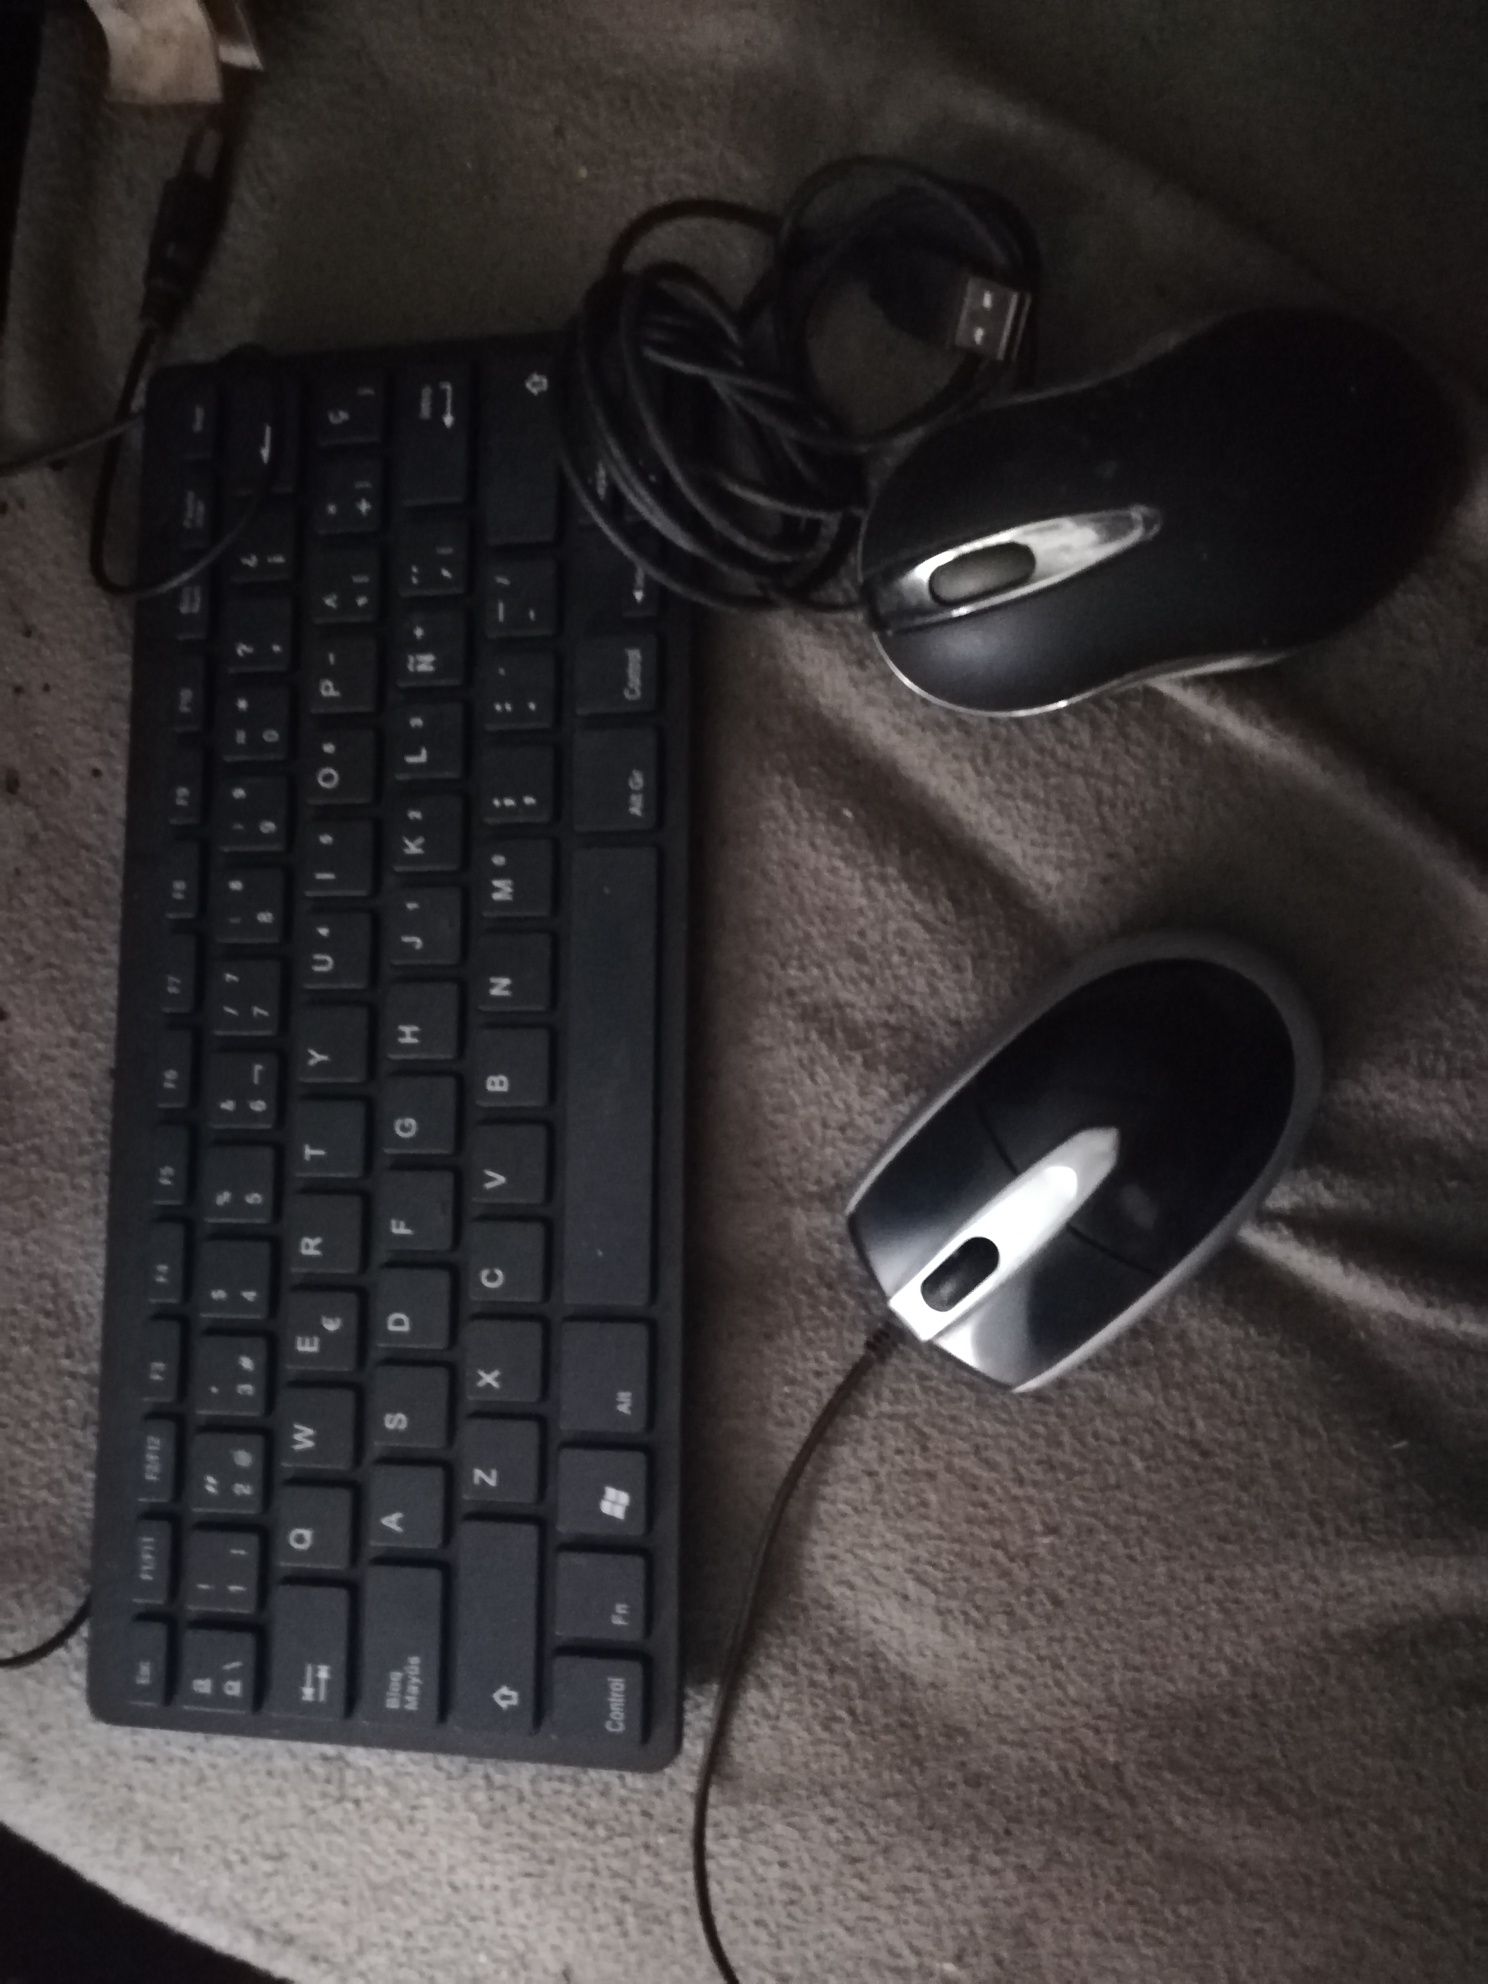 2 ratos e teclado USB, tudo em bom estado